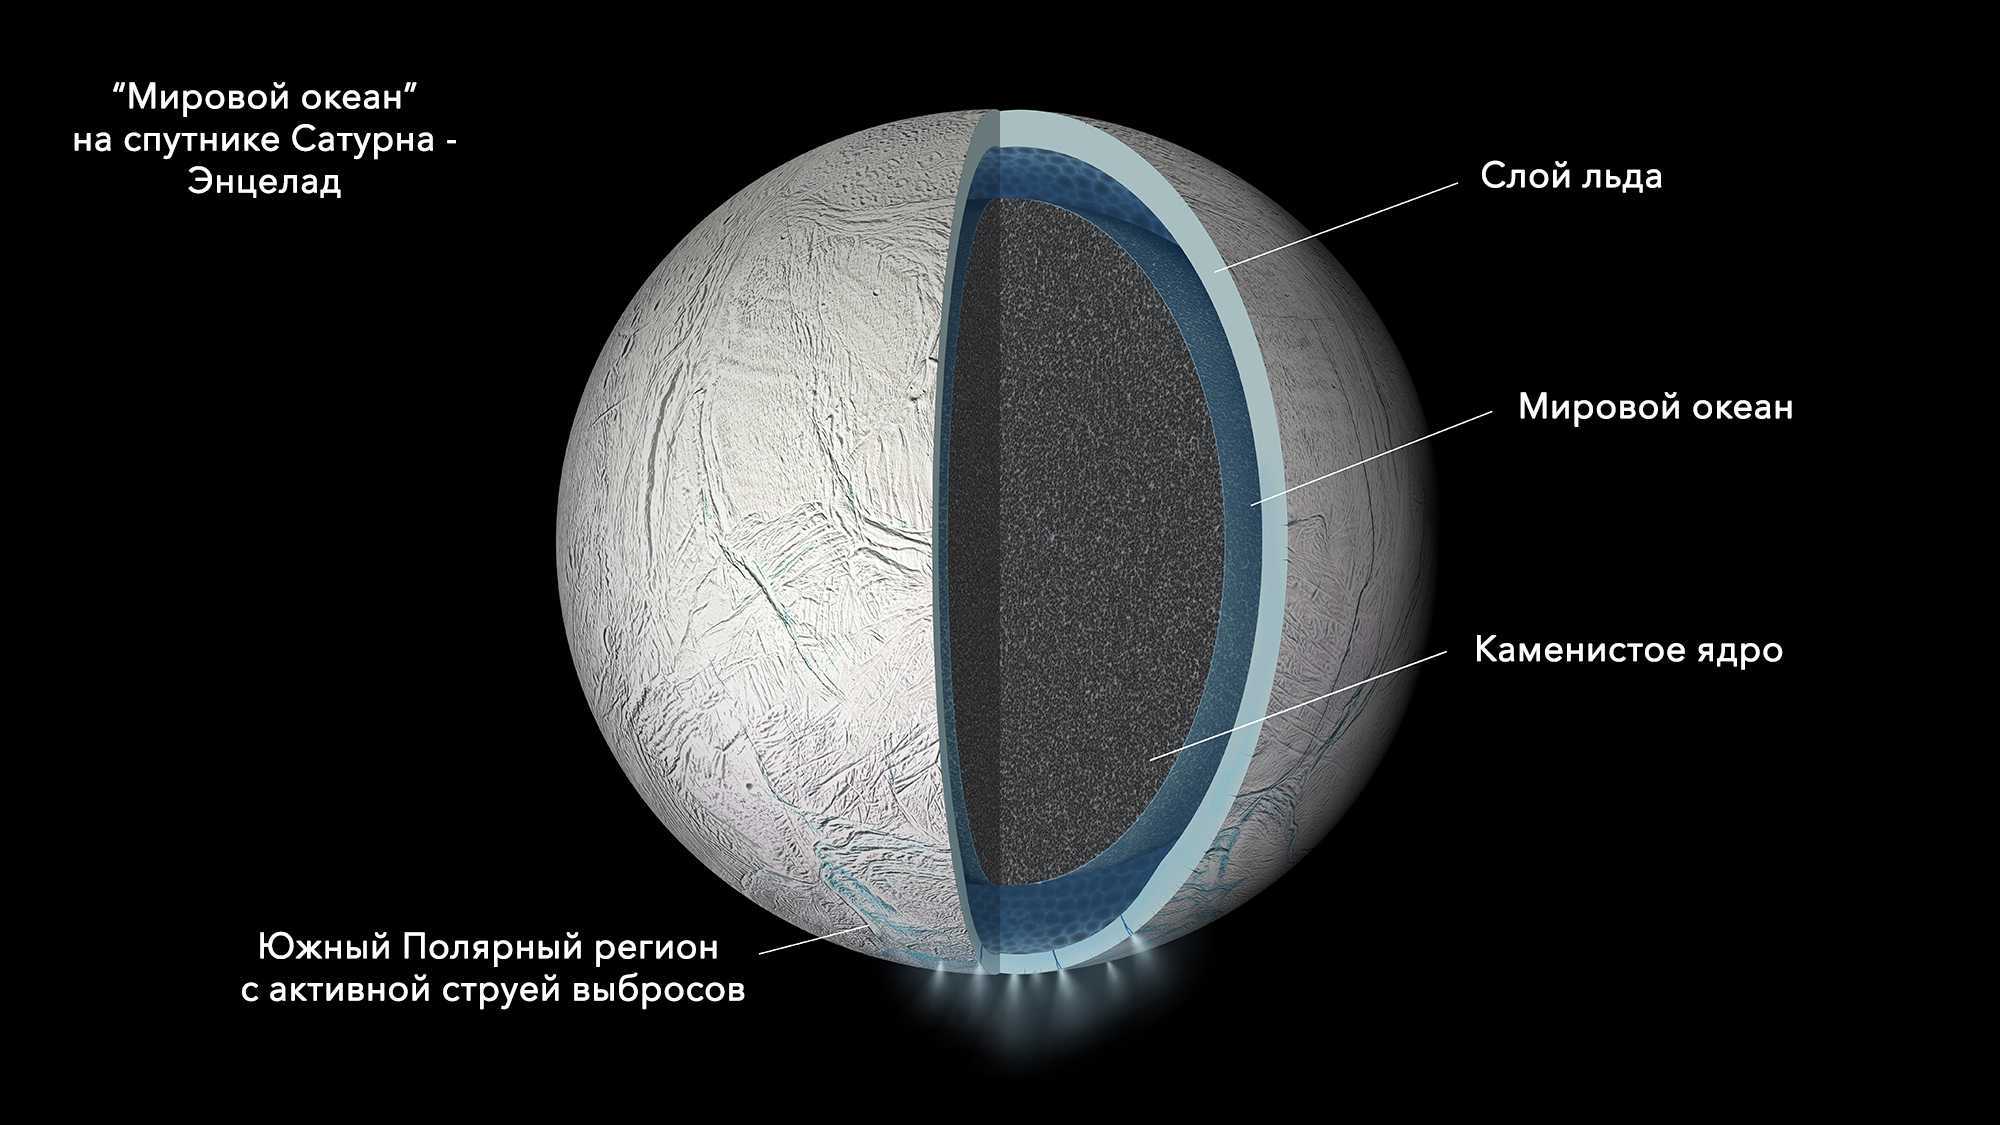 Энцелад — спутник сатурна. следы возможной жизни